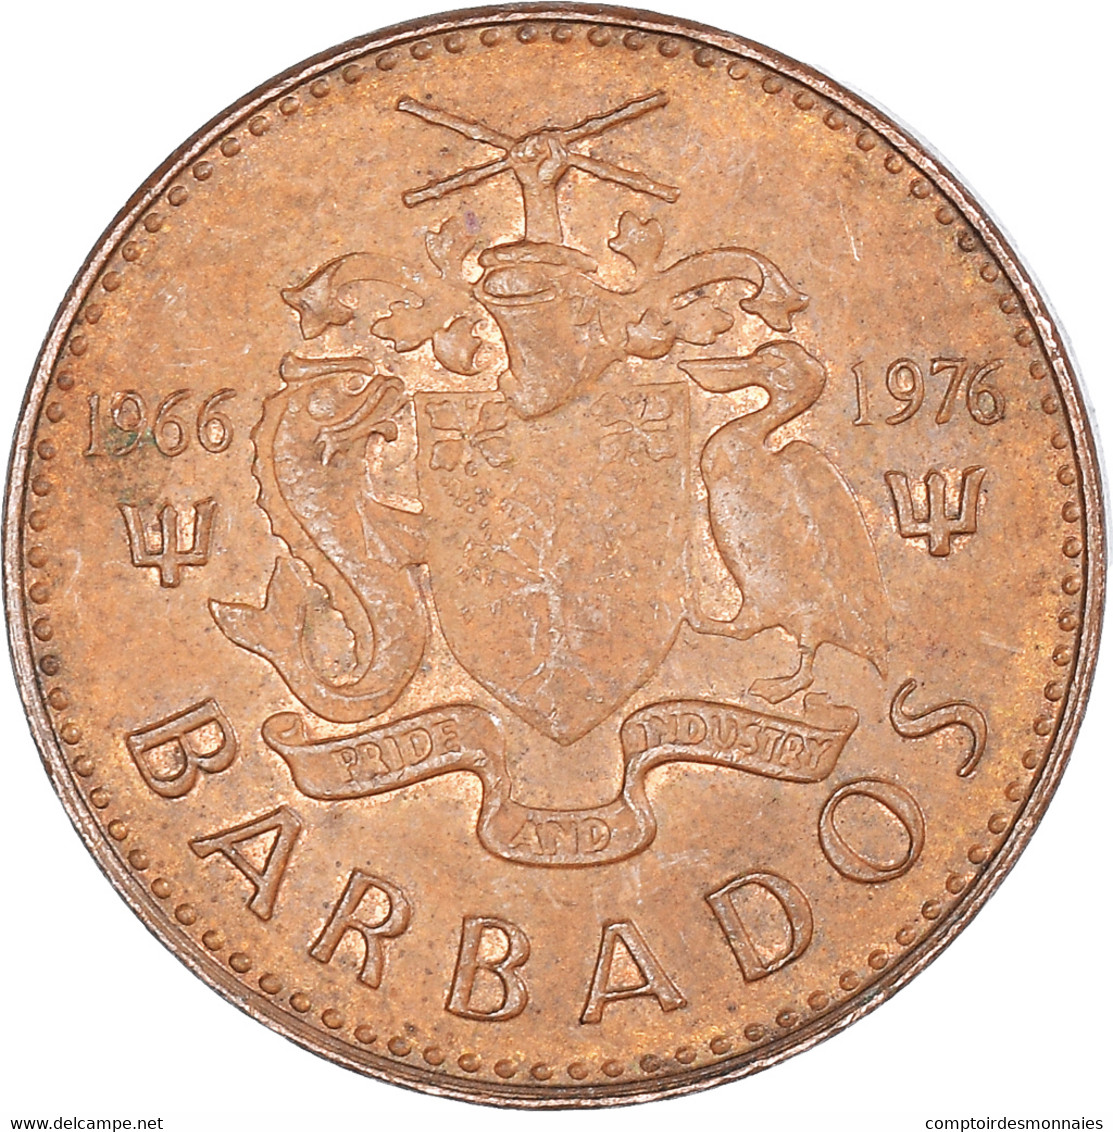 Monnaie, Barbade, Cent, 1976 - Barbados (Barbuda)